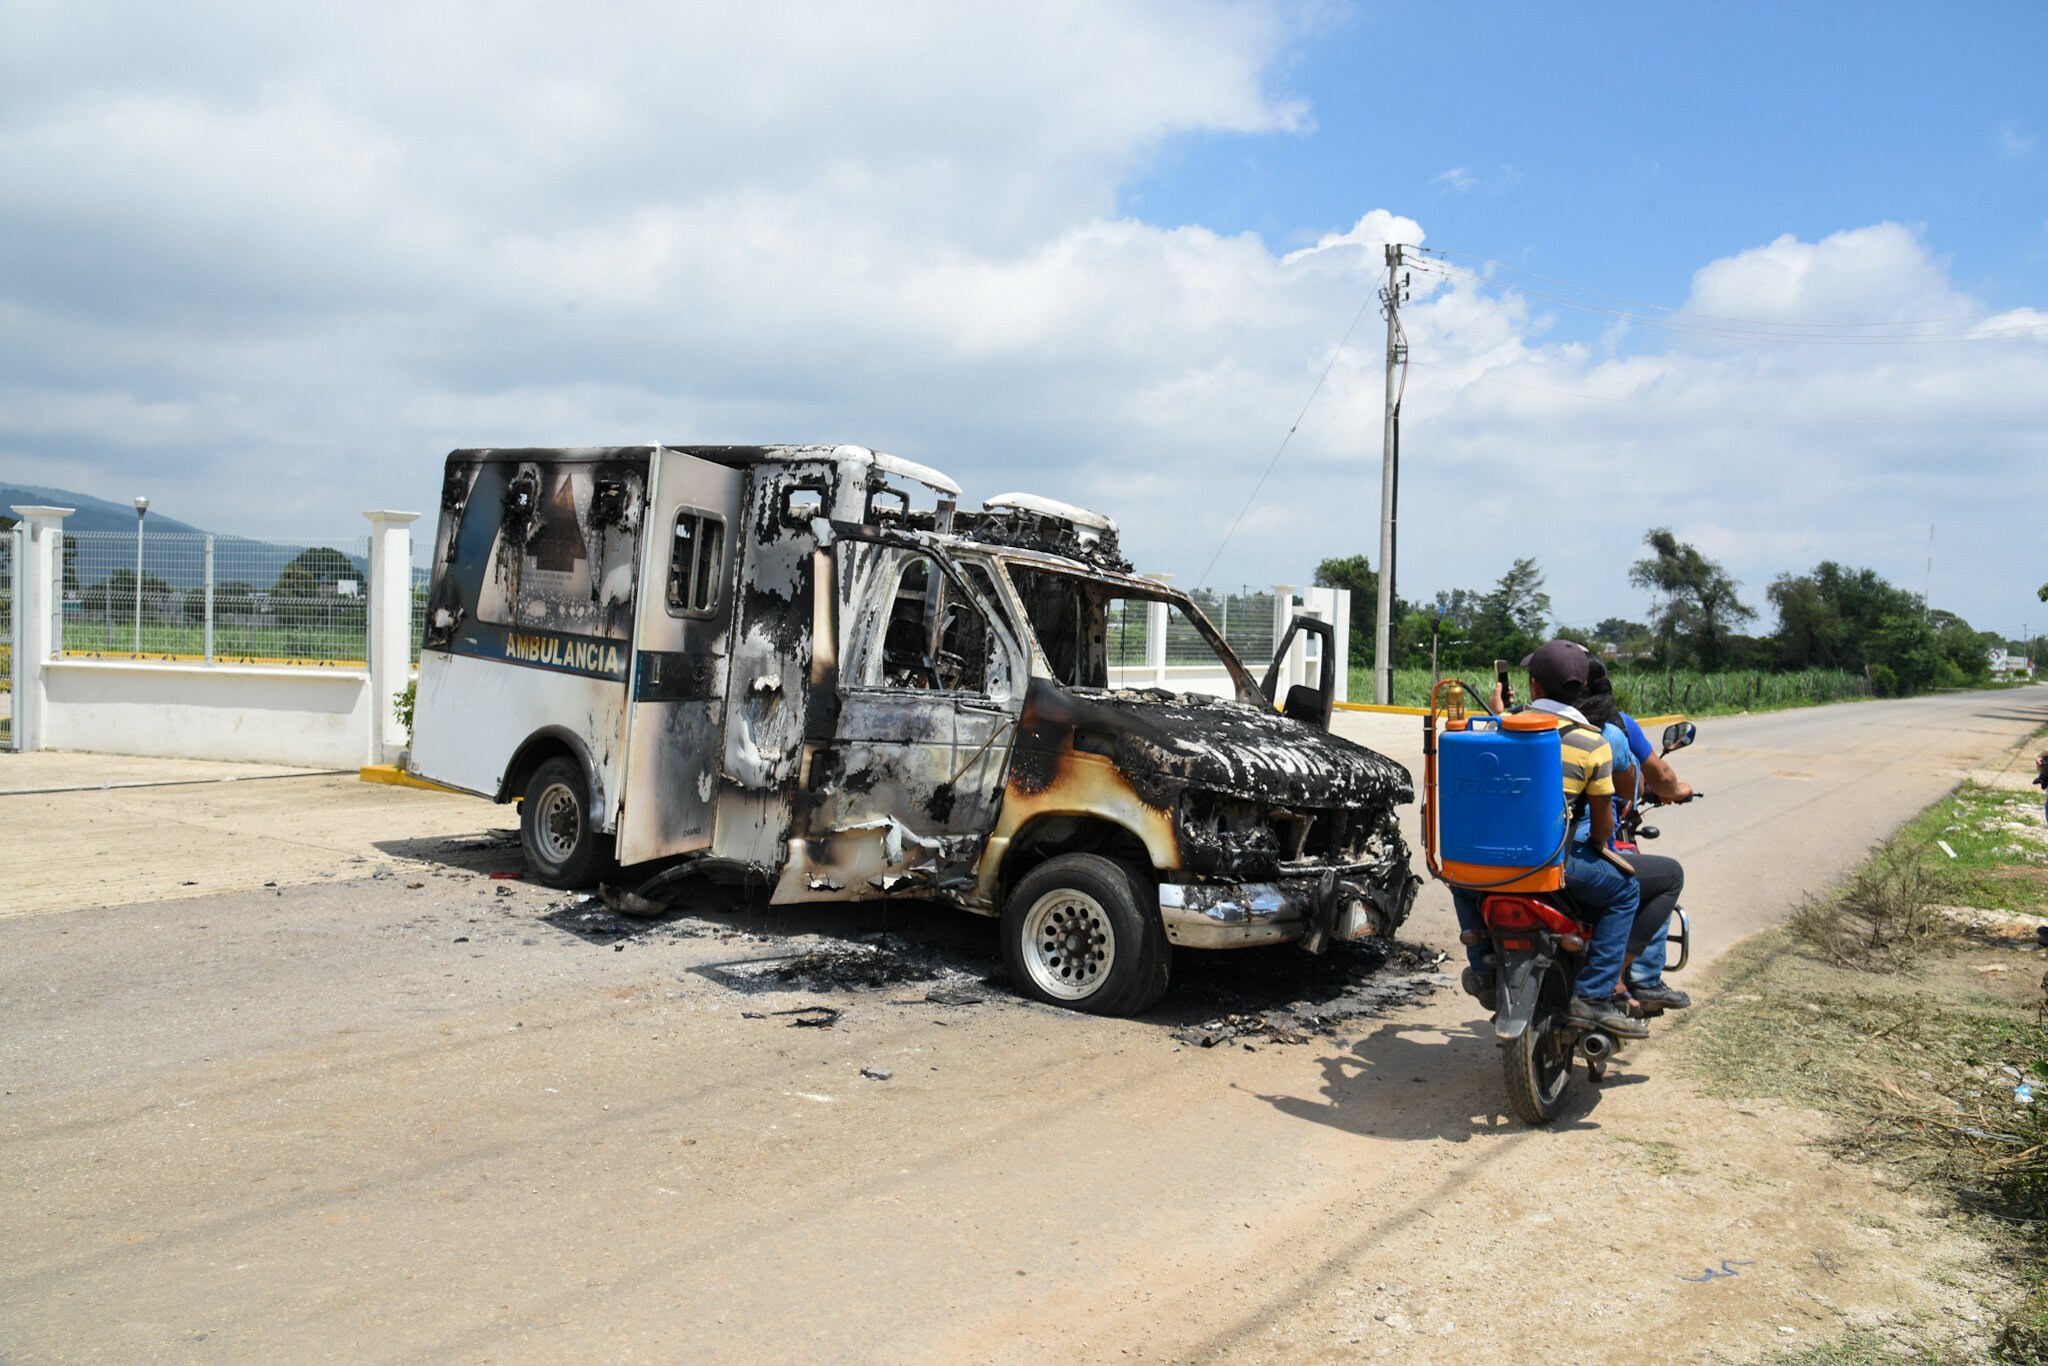  En el municipio de Las Rosas habitantes incendiaron una ambulancia y causaron destrozos en la clínica de Salud debido a los rumores sobre la fumigación para el Dengue. Fase 3 de la pandemia por covid19 